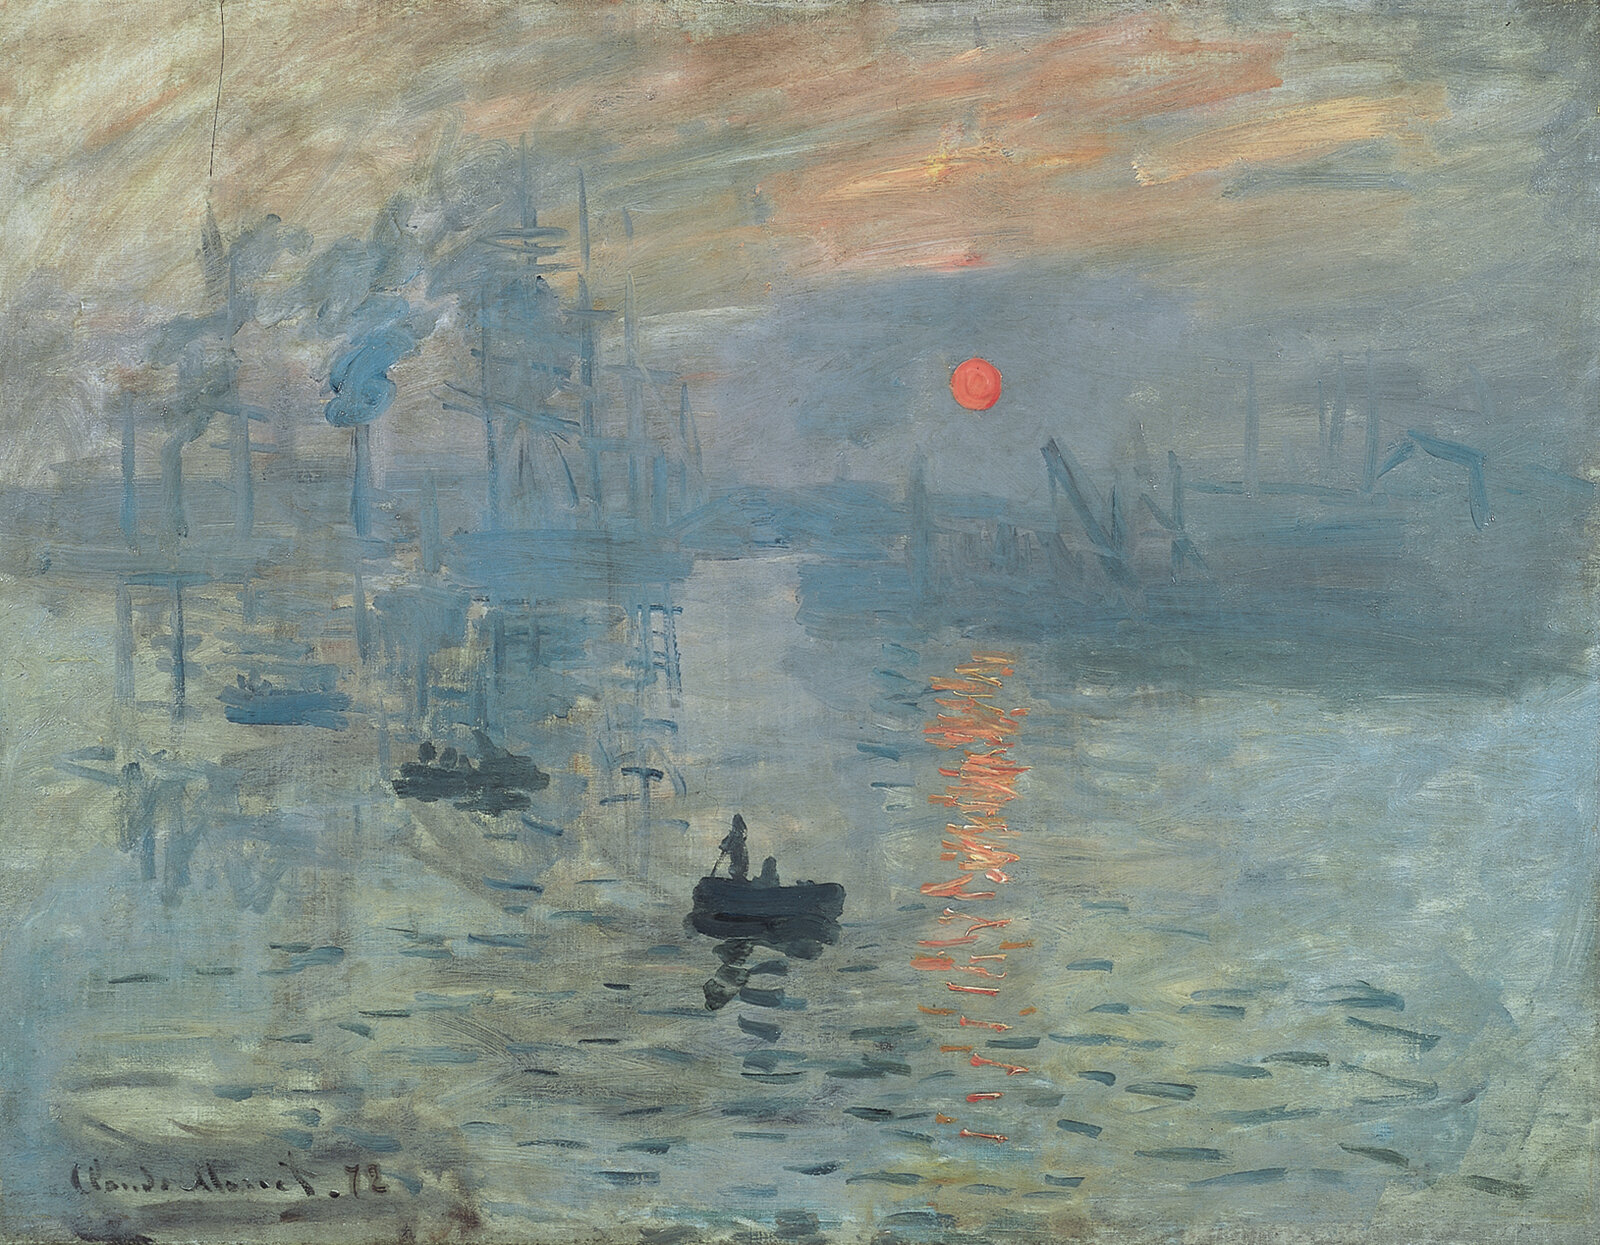 Claude Monet, Impression, Sunrise, 1873